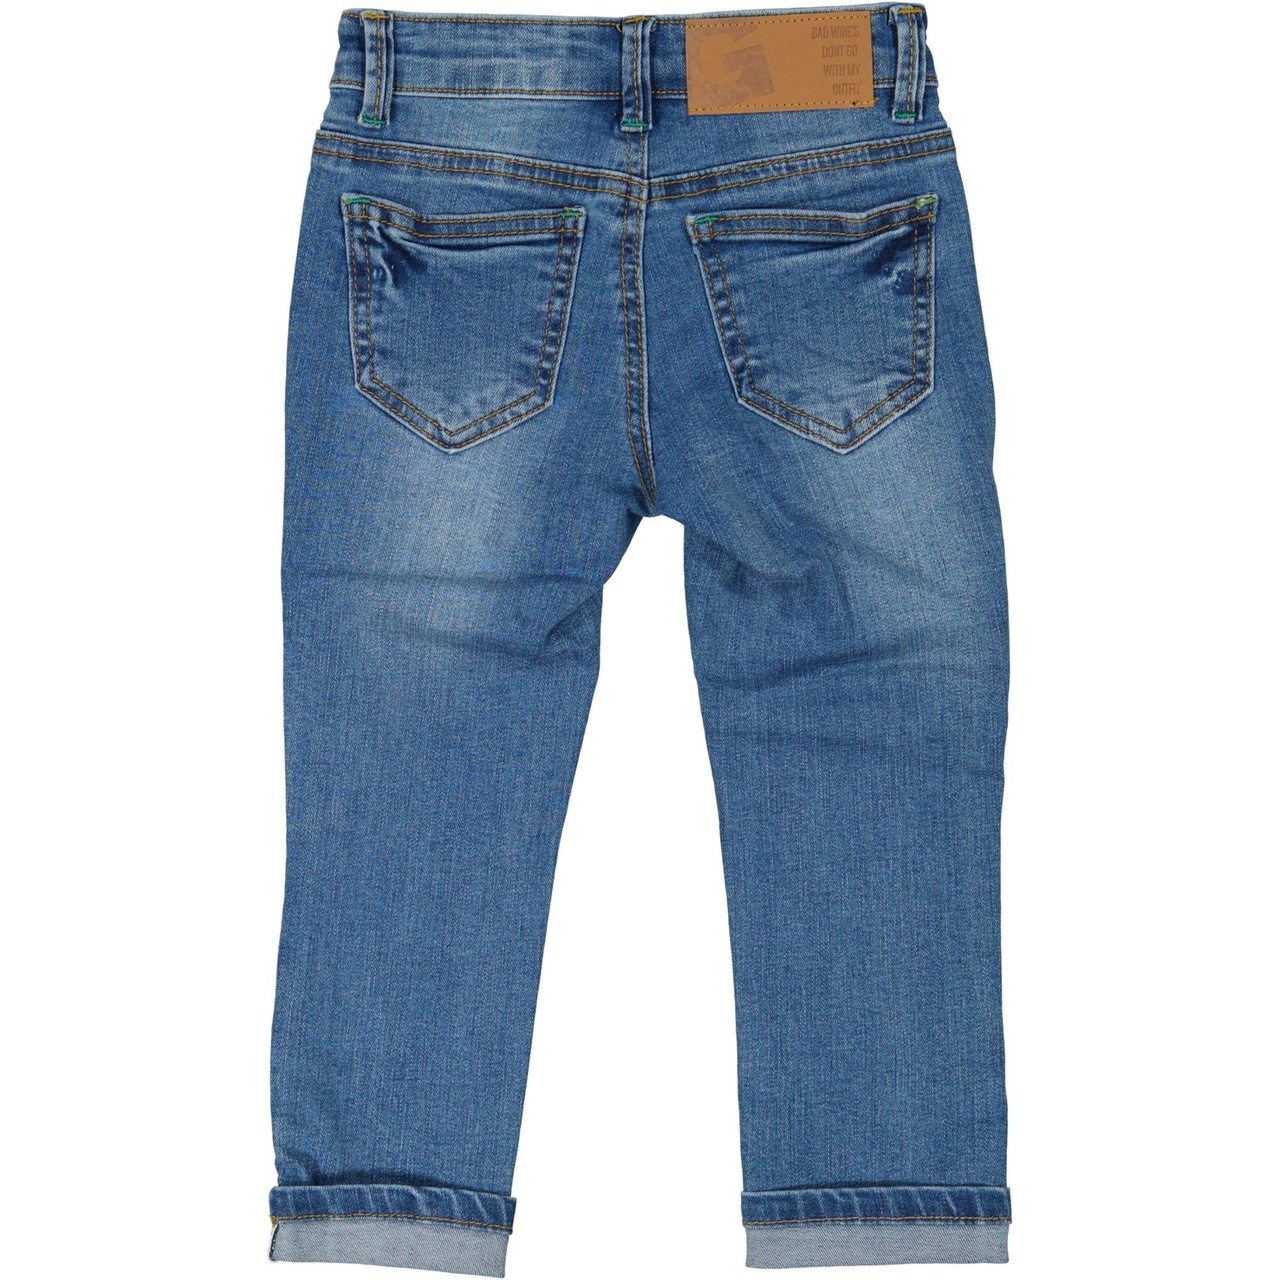 Unisex 5-pocket jeans Denim blue wash 110/116